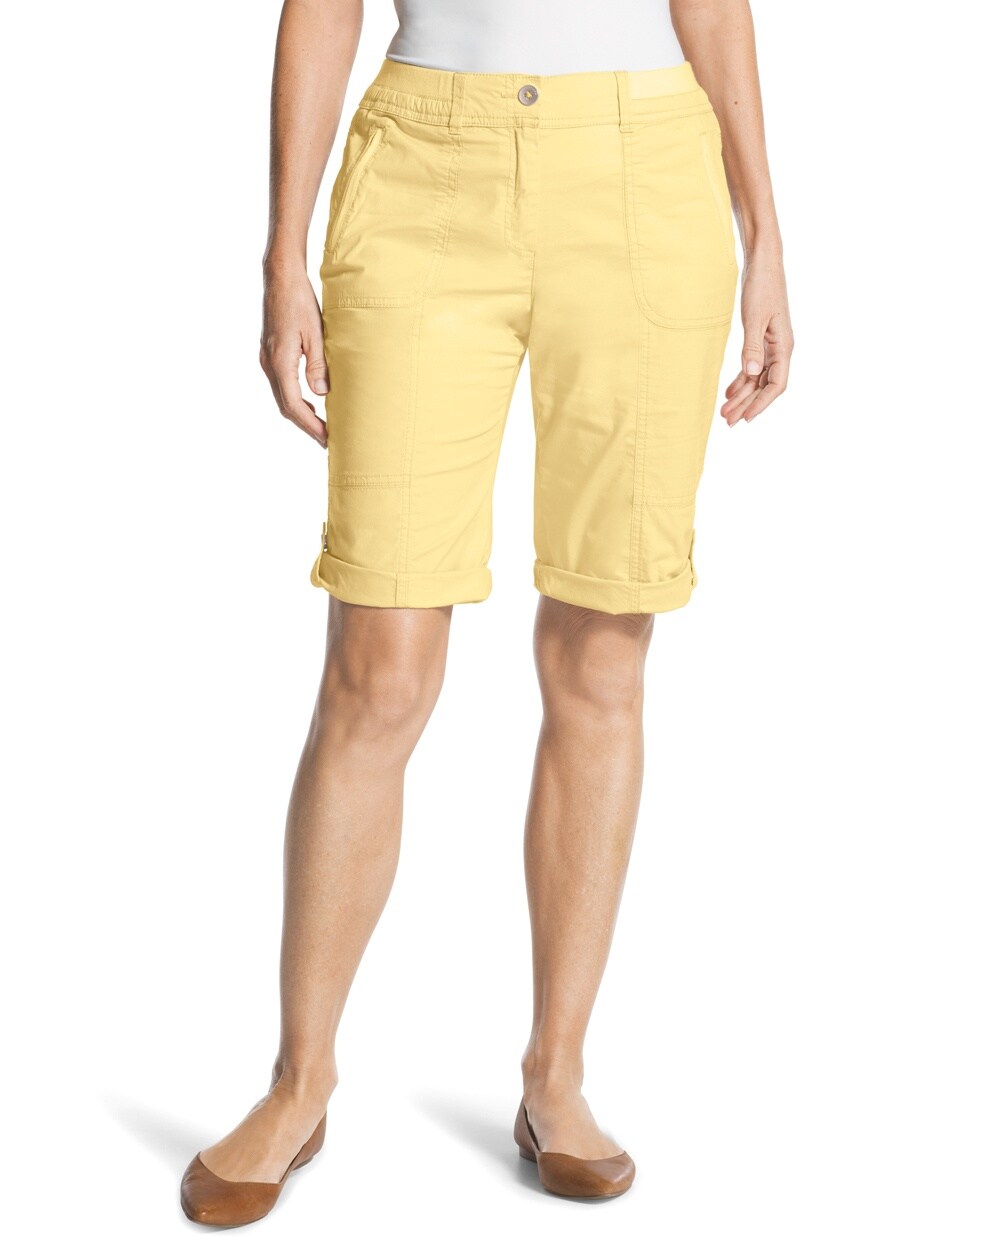 Casual Roll-Cuff Shorts - 11 Inch Inseam